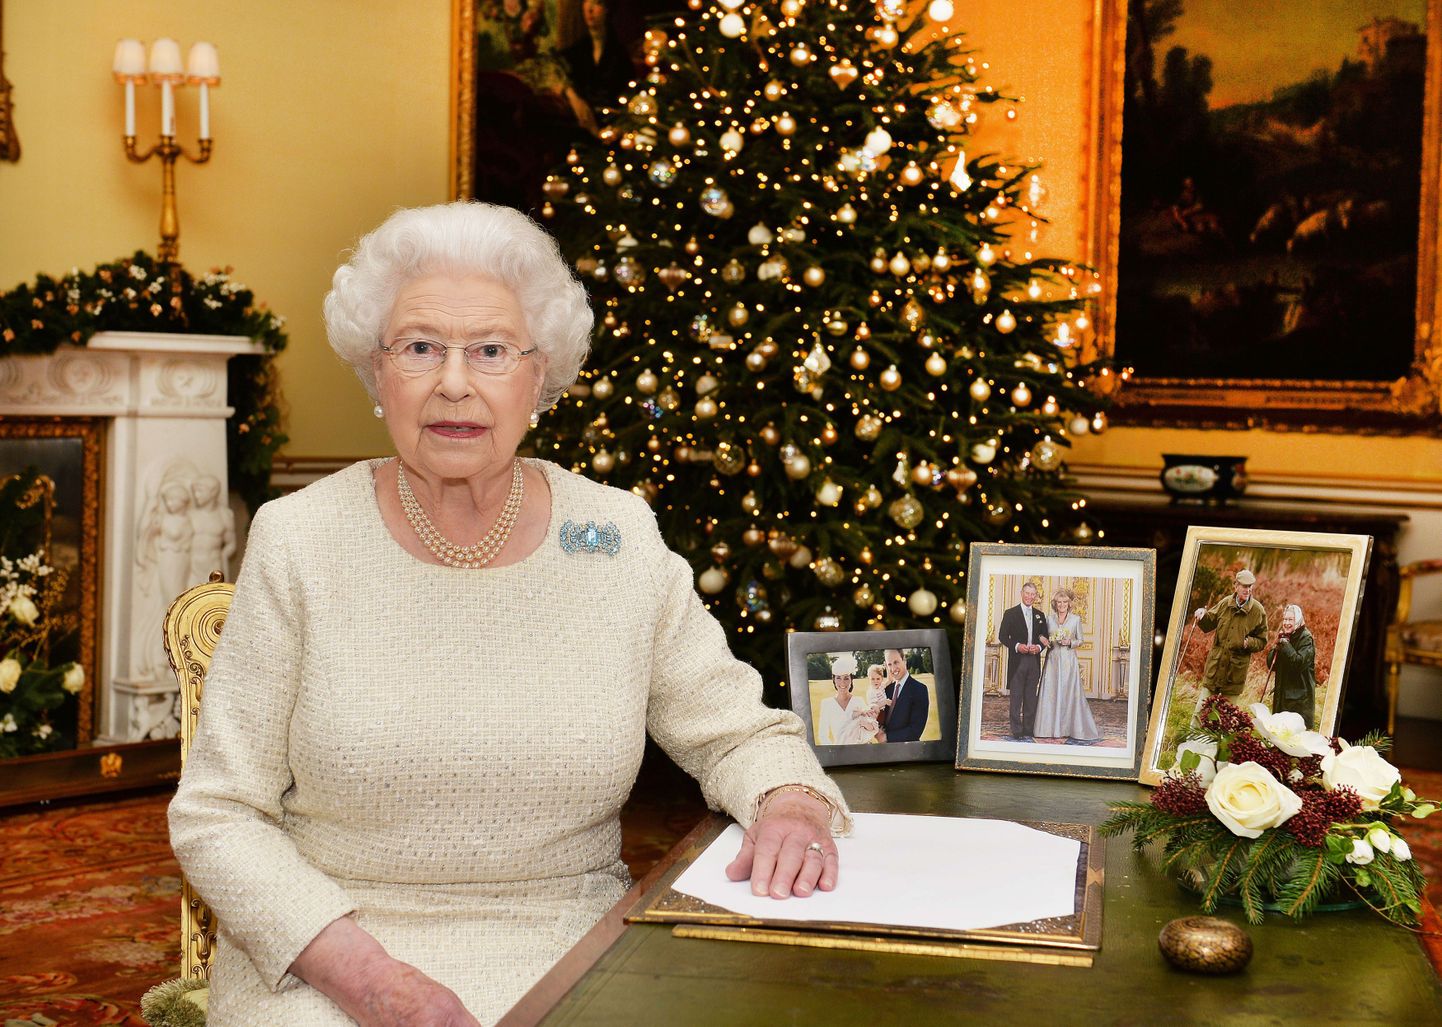 Briti kuningapere käis jõulu-jumalateenistusel